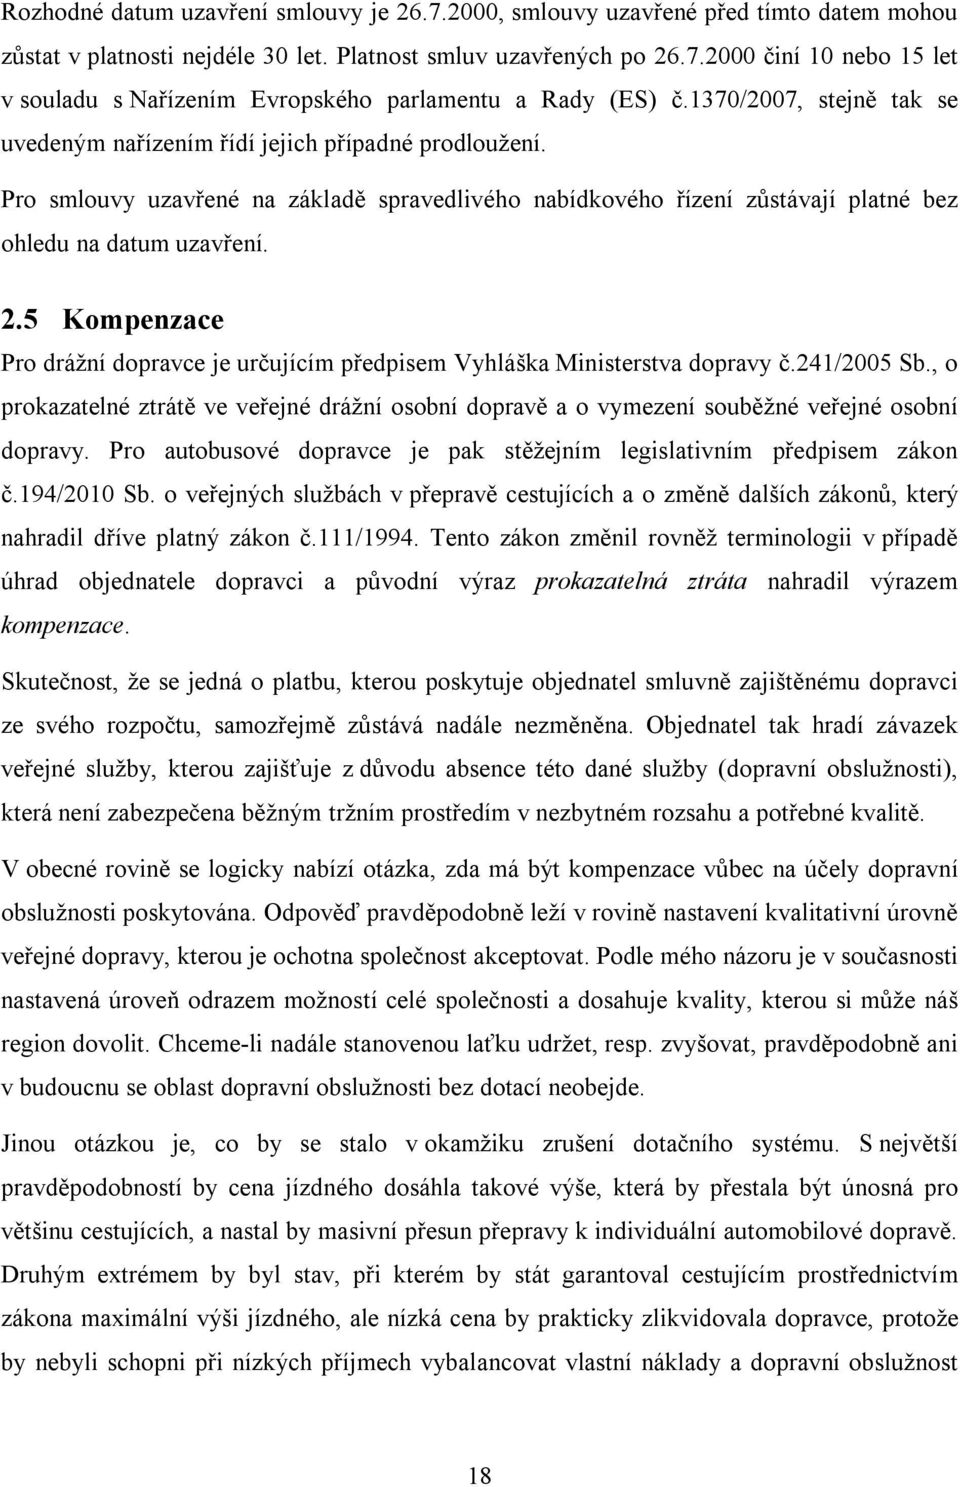 5 Kompenzace Pro drážní dopravce je určujícím předpisem Vyhláška Ministerstva dopravy č.241/2005 Sb.